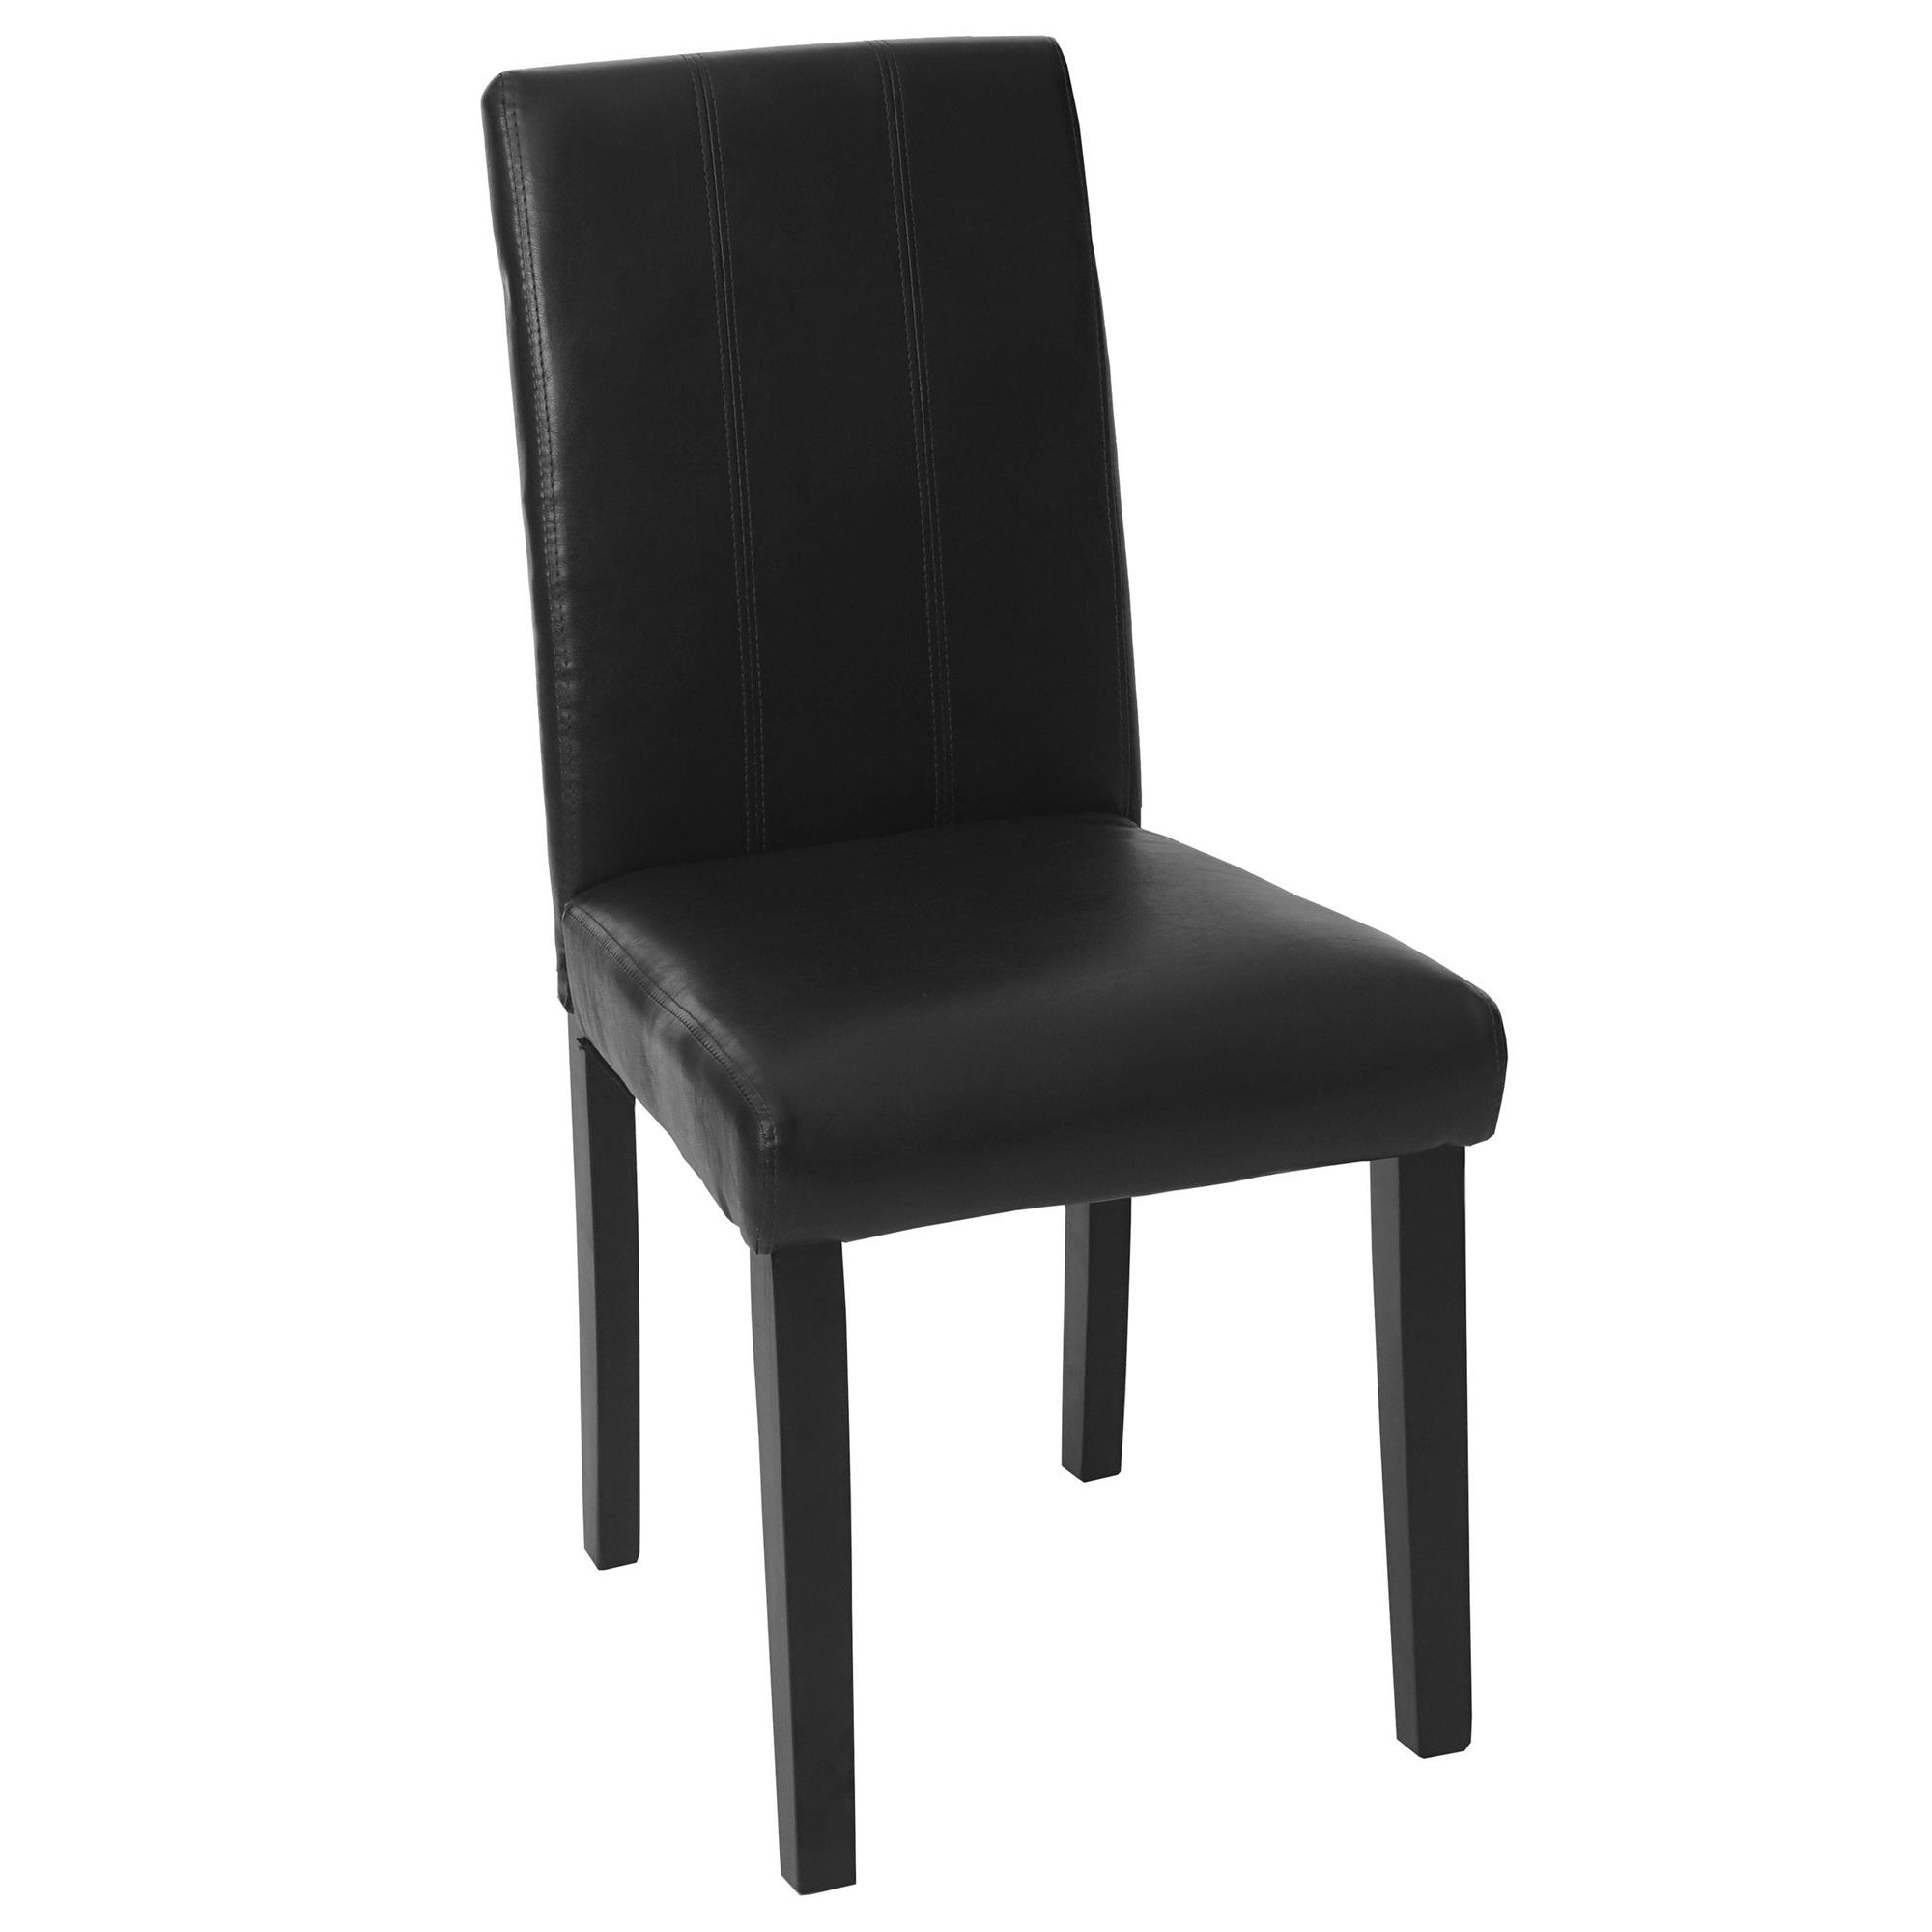 Lote 6 sillas comedor TOPER, en piel negra con costuras - Homy.es